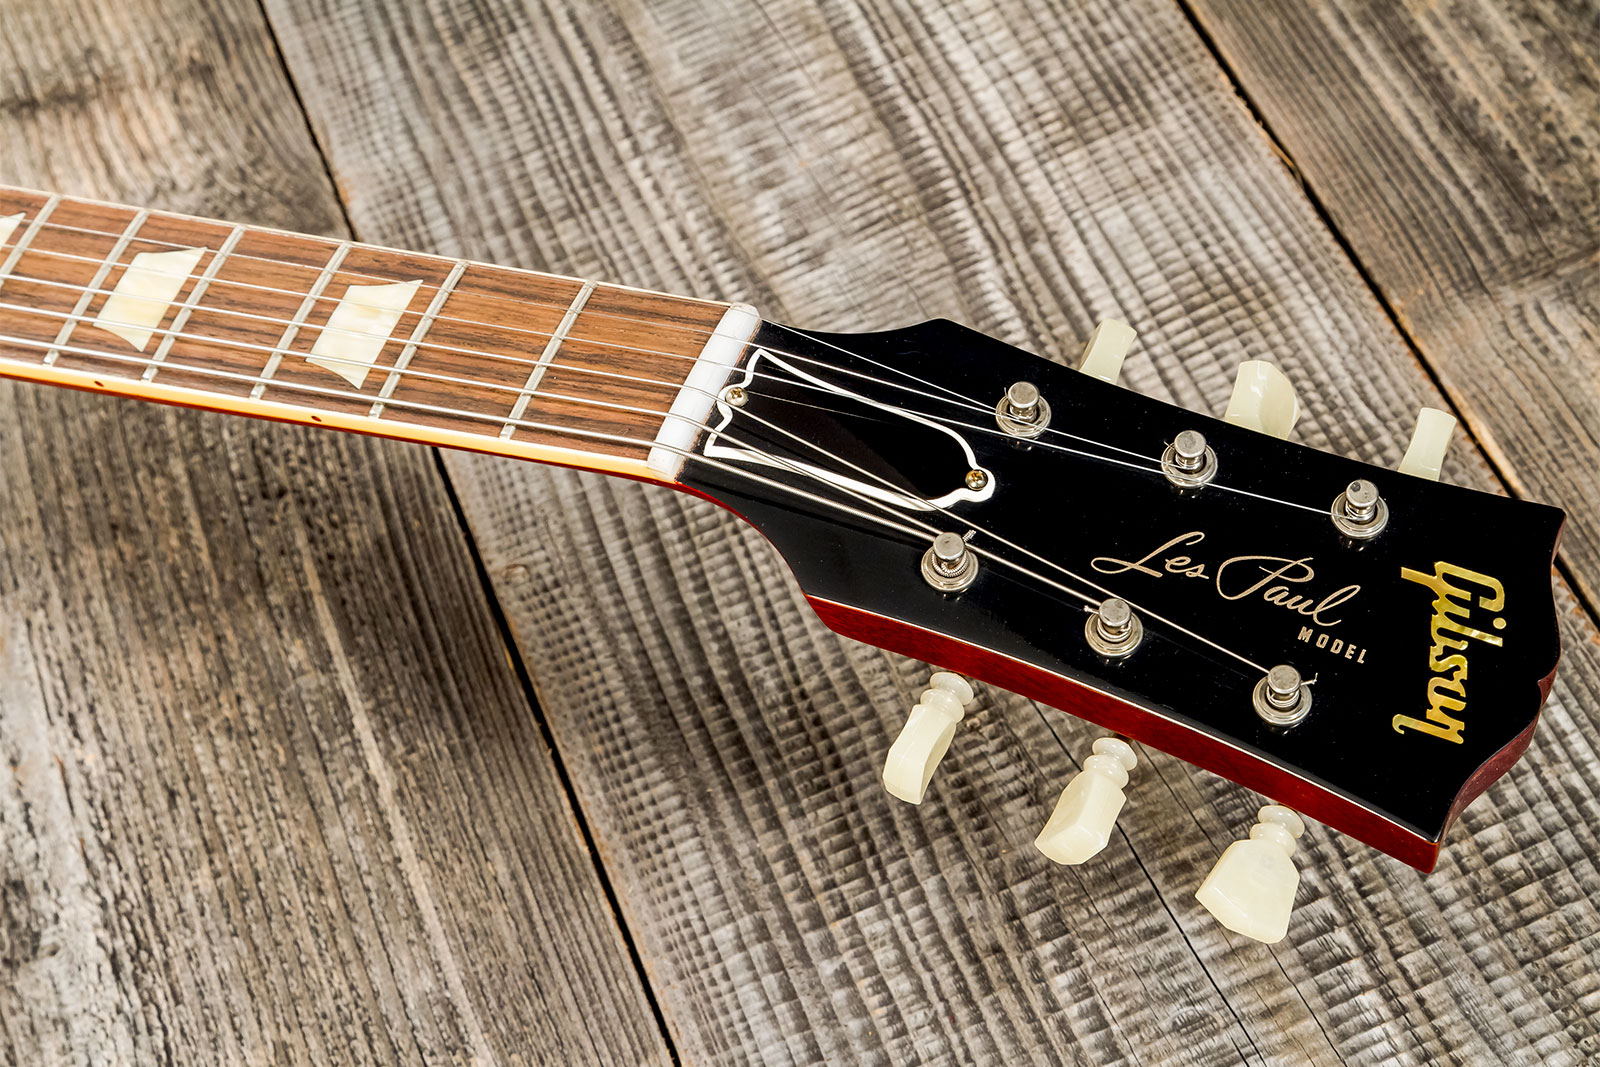 Gibson Custom Shop Les Paul Standard 1960 Reissue Lh Gaucher 2h Ht Rw #09122 - Vos Tangerine Burst - Linkshandige elektrische gitaar - Variation 7